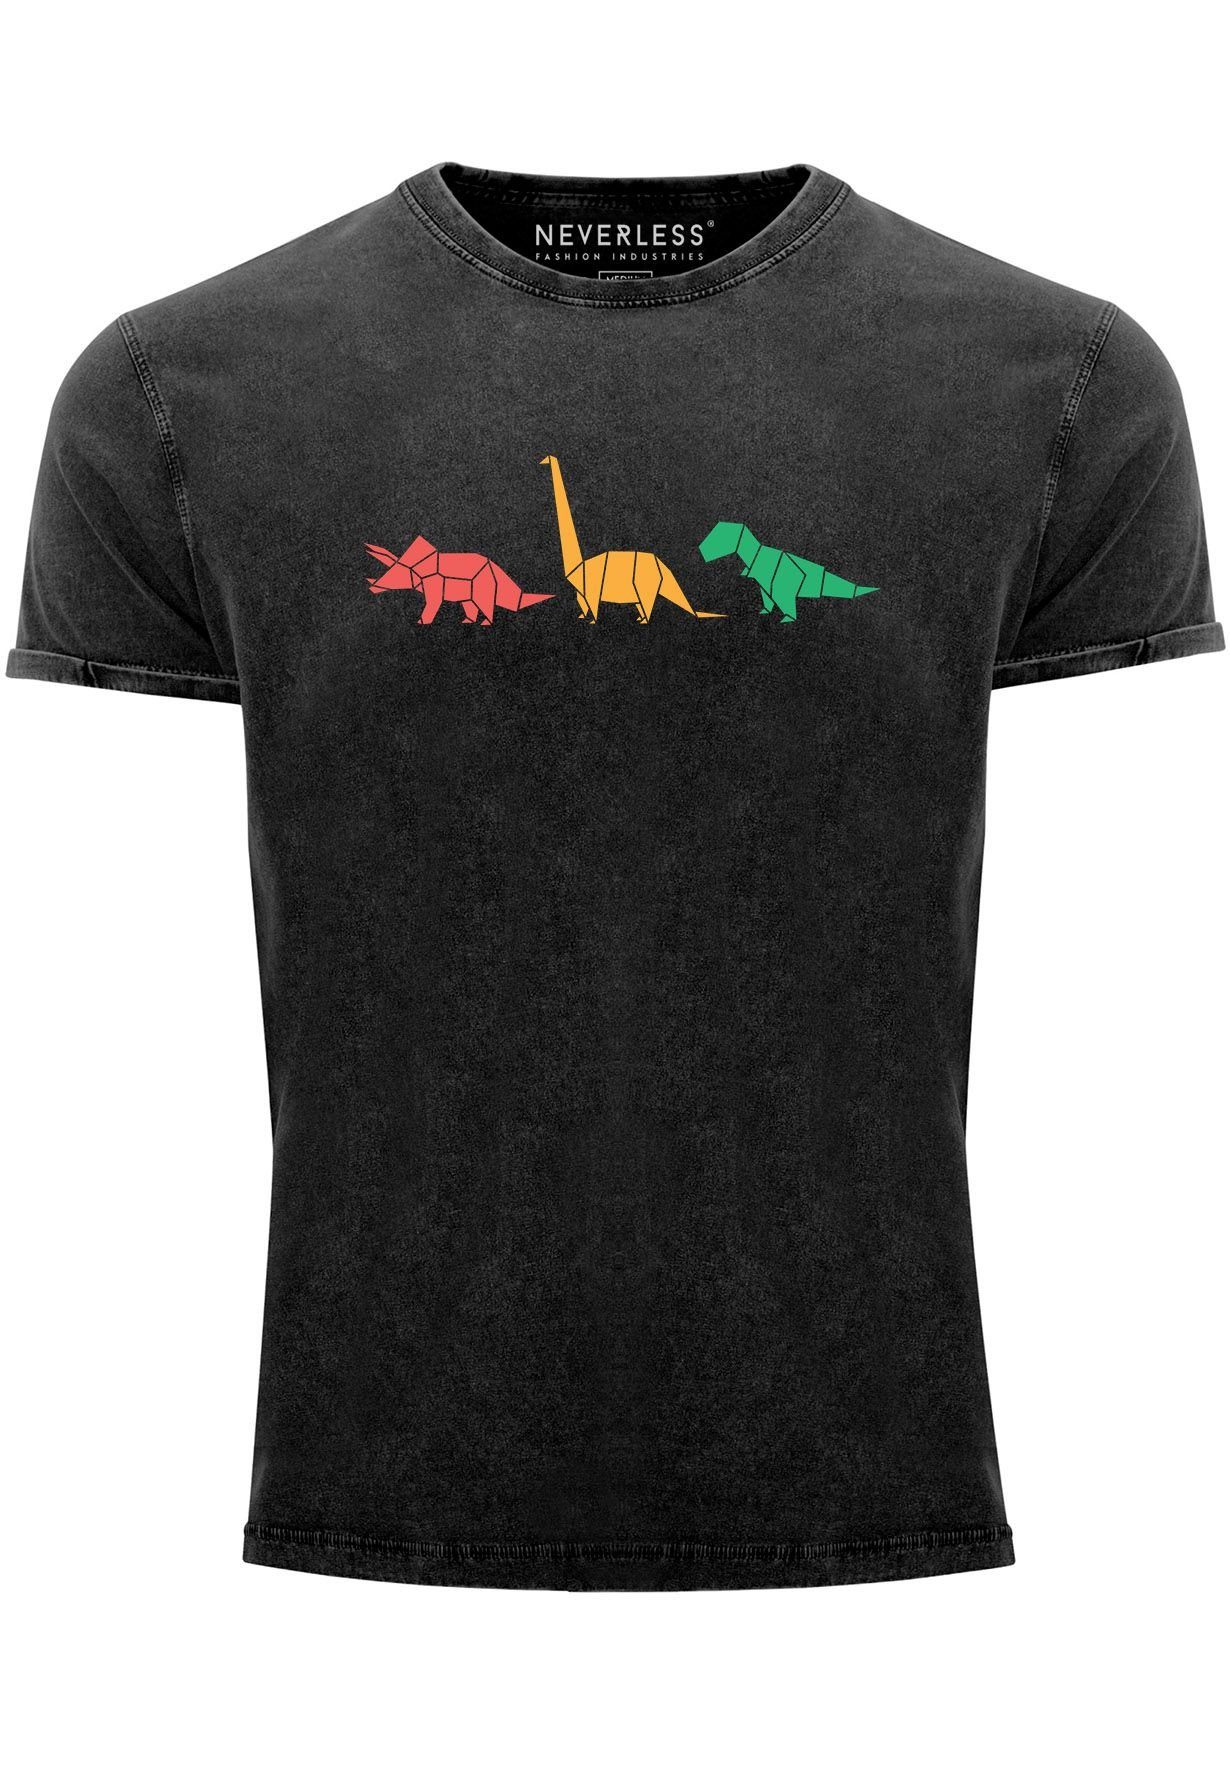 Herren Vintage Polygon Print-Shirt Shirt schwarz Aufdruck Geometric Tiere Print Dinosaurier Neverless mit Prin